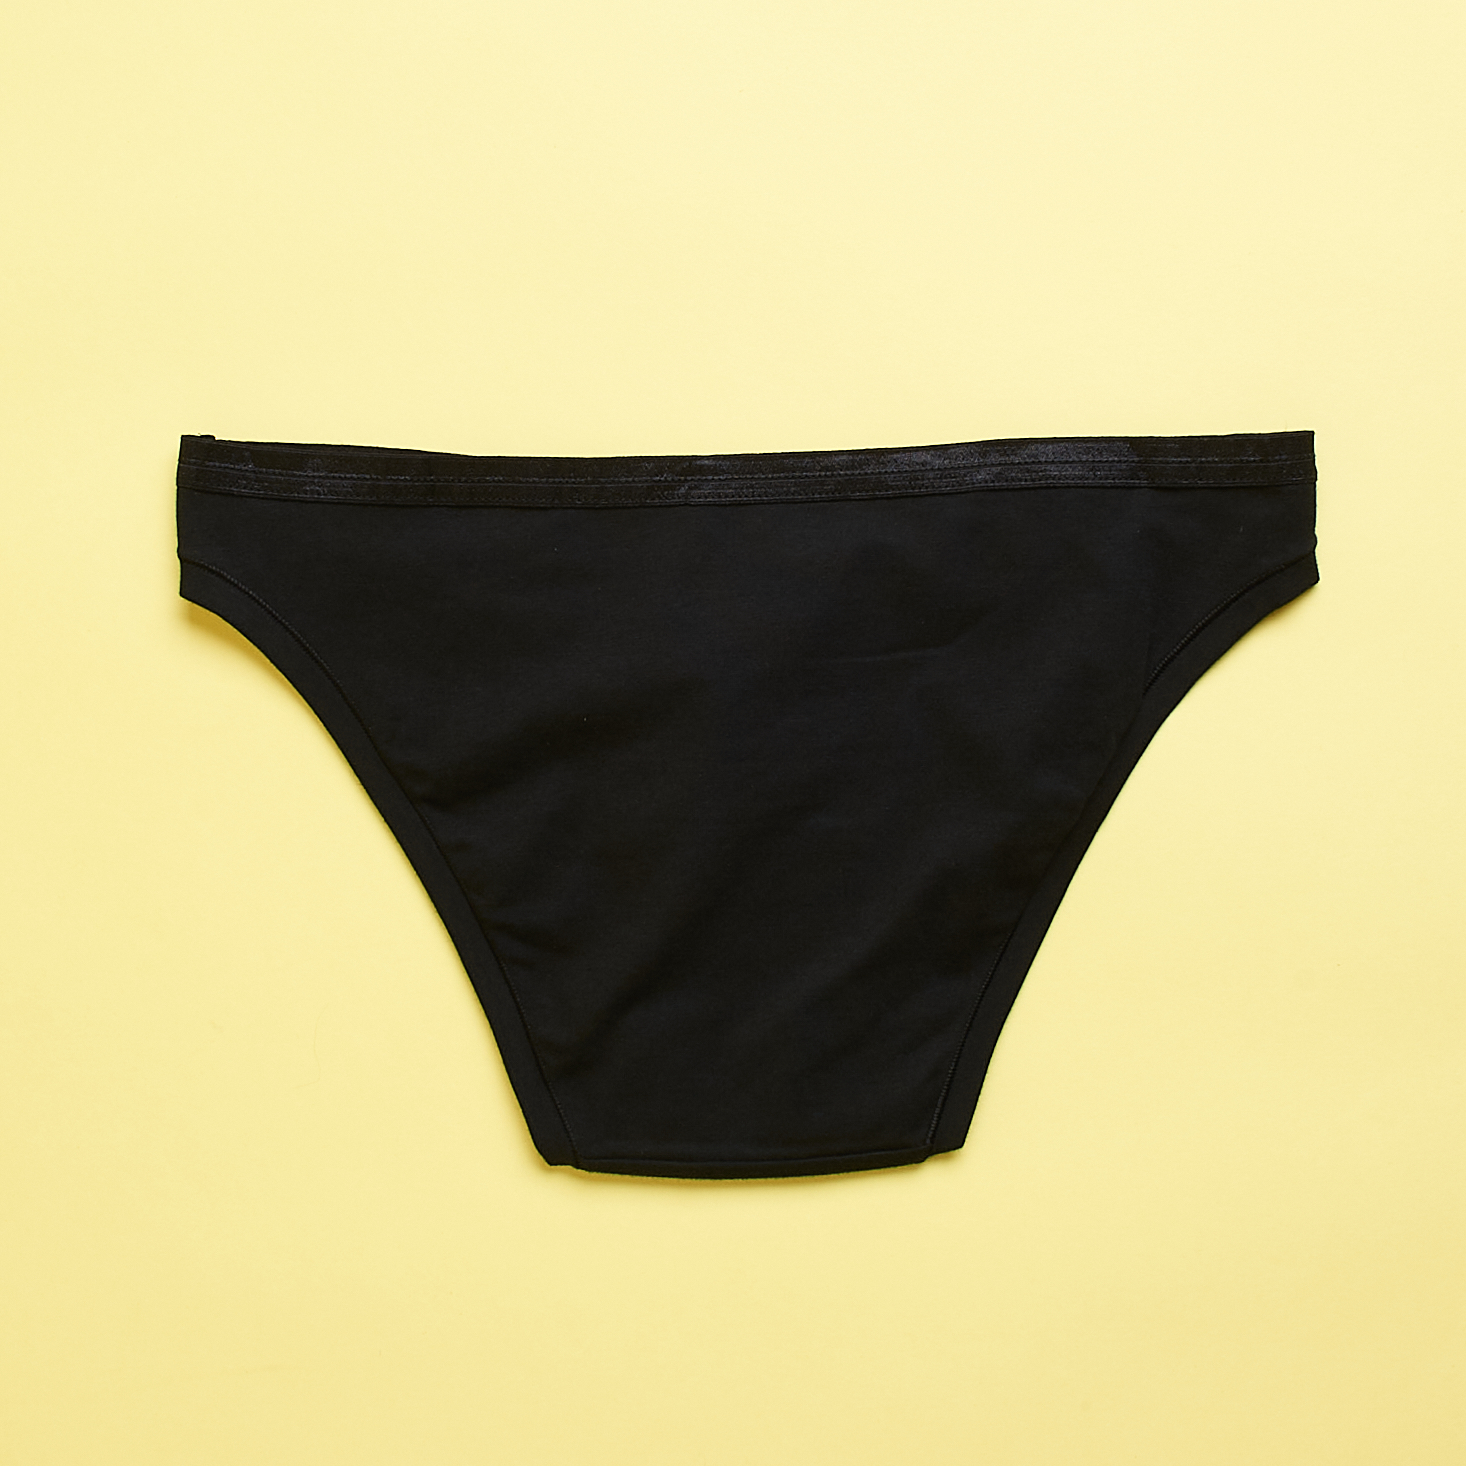 low-rise bikini underwear from Knickey